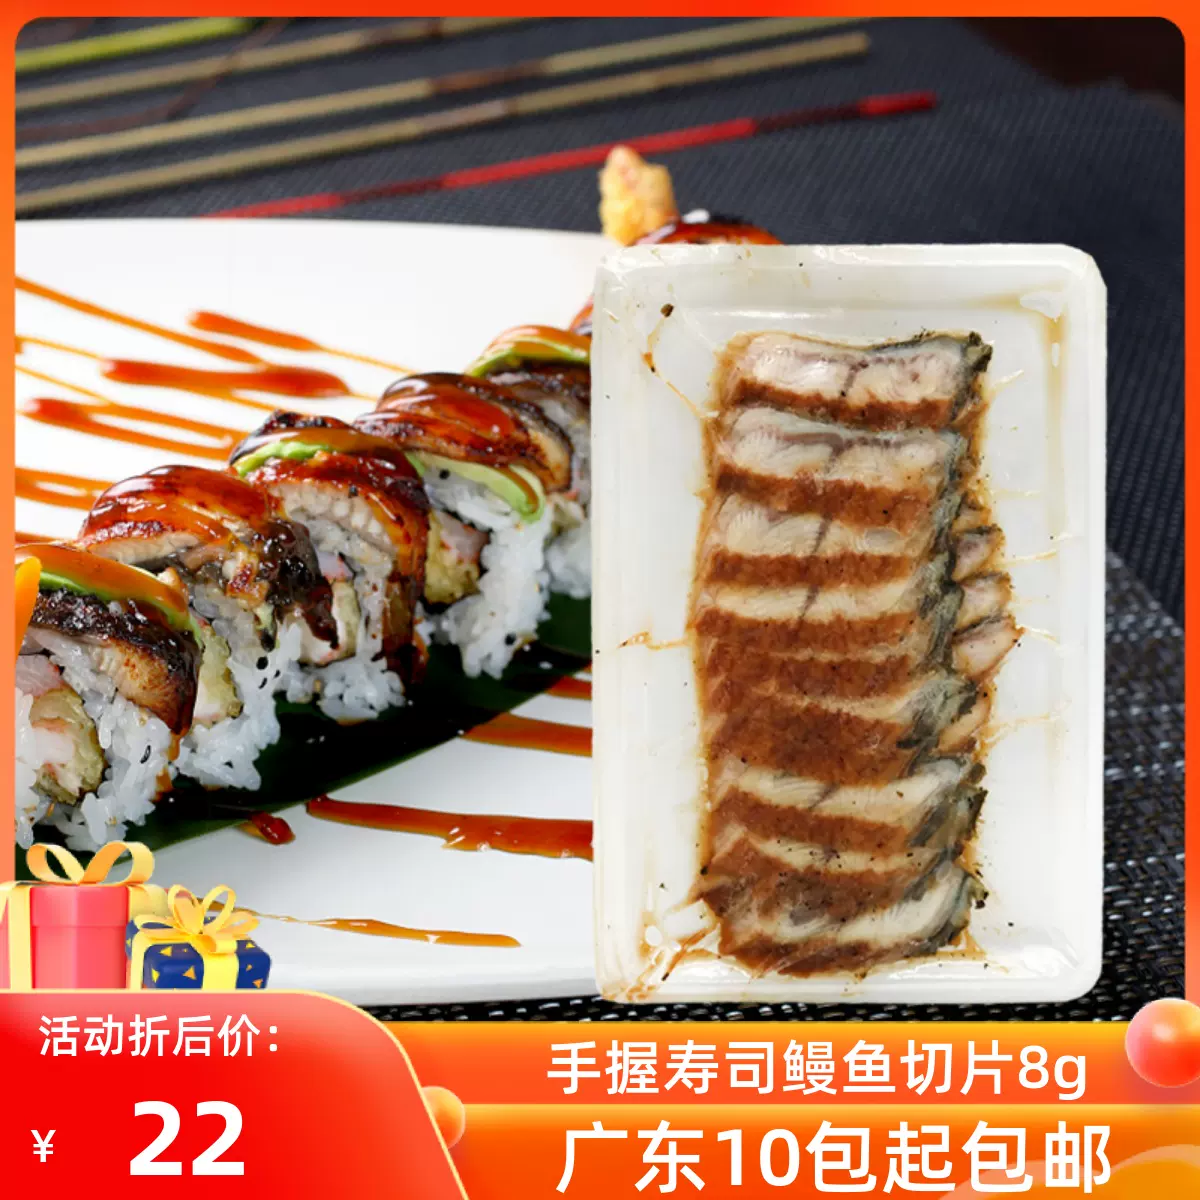 寿司蒲烧切片炭烤鳗鱼片8g 片即食手握烤